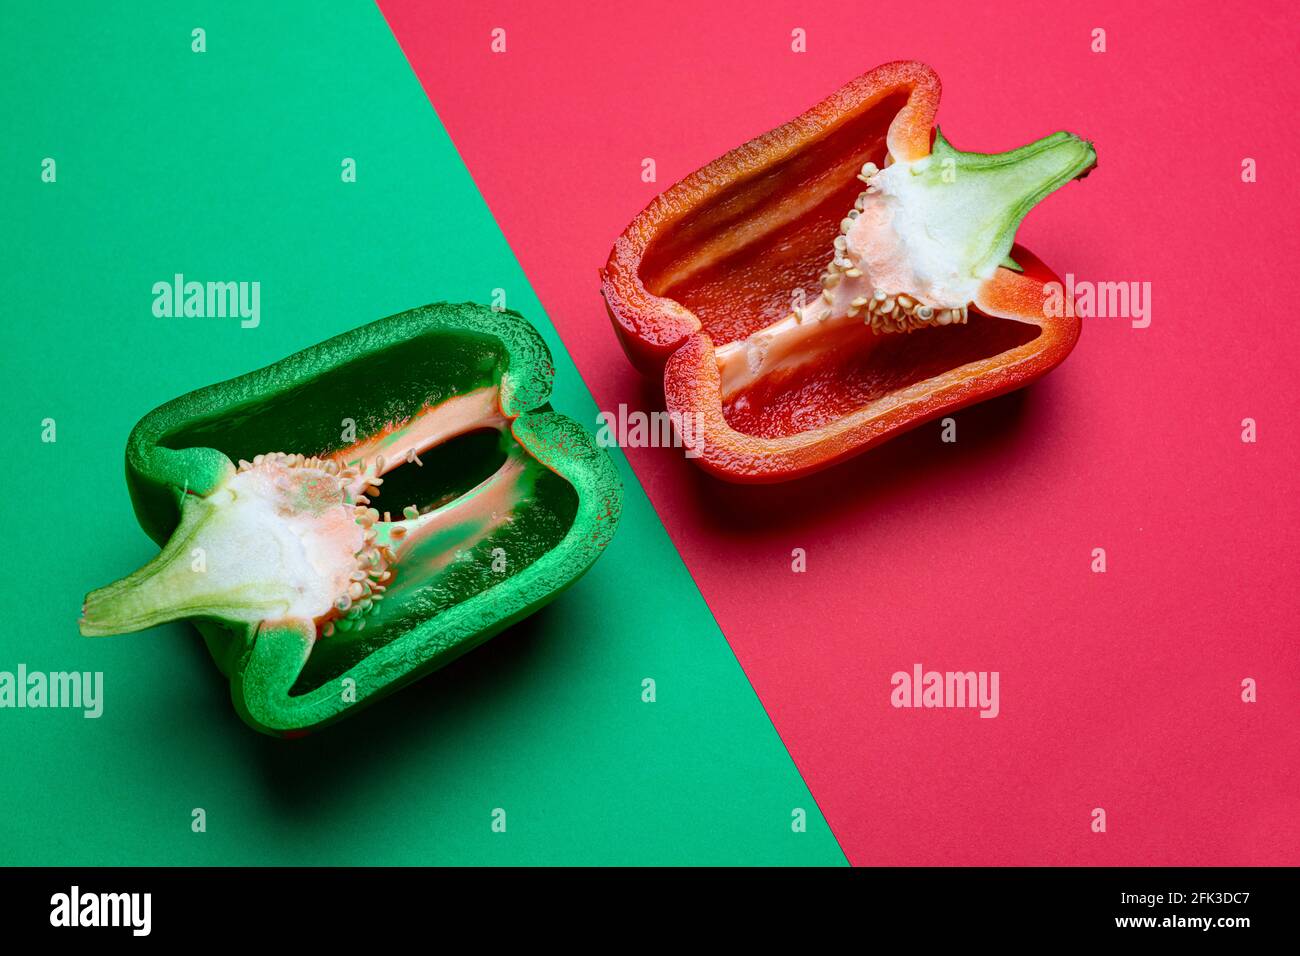 Eine grüne und eine rote Paprika in zwei Hälften geschnitten und Auf einer farbigen Oberfläche angeordnet Stockfoto